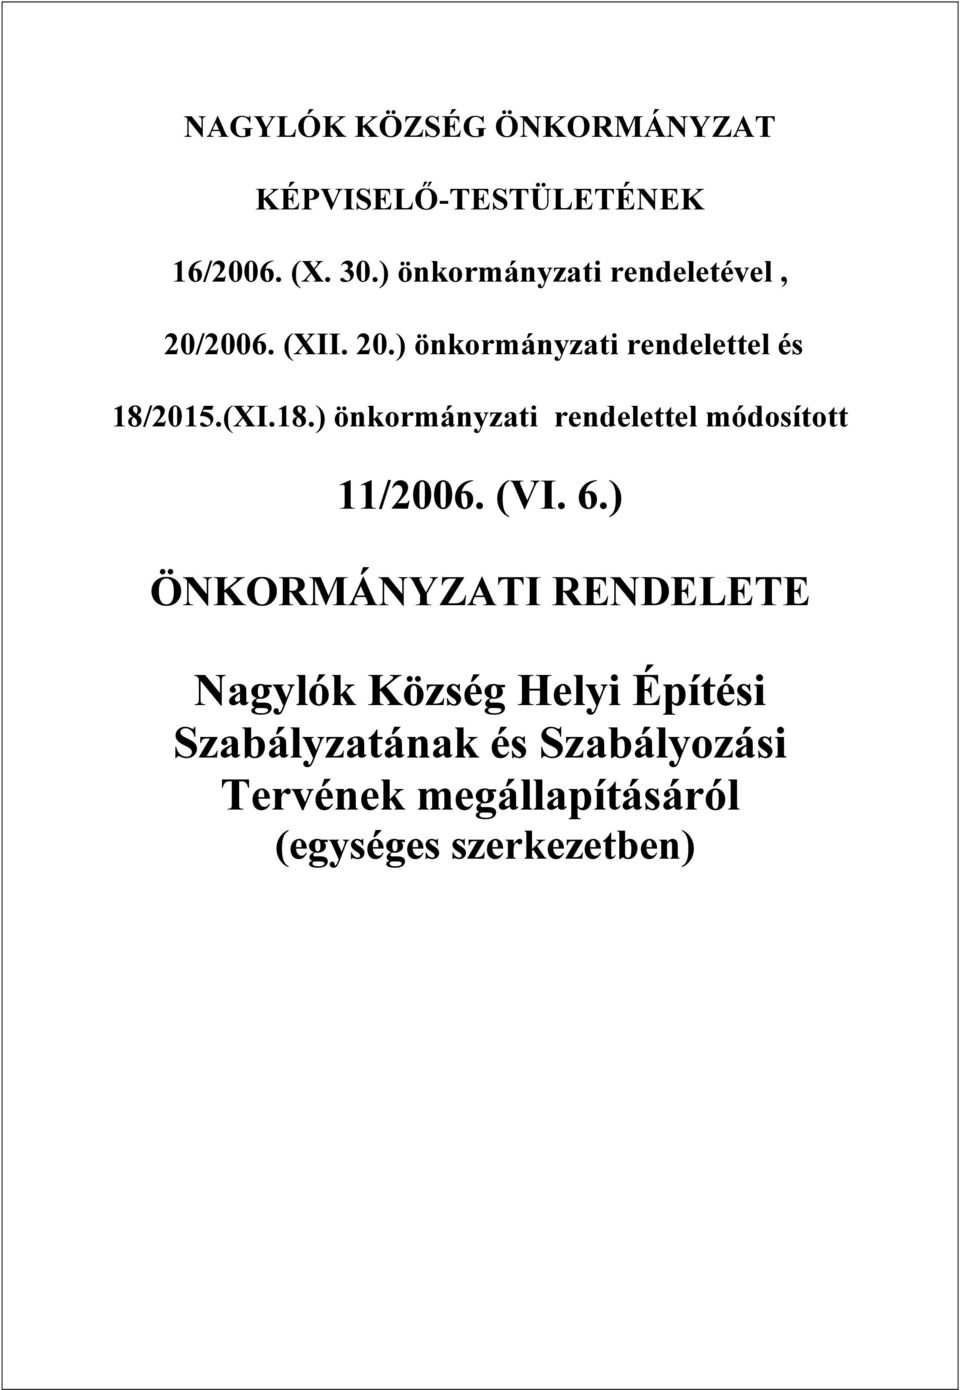 (XI.18.) önkormányzati rendelettel módosított 11/2006. (VI. 6.